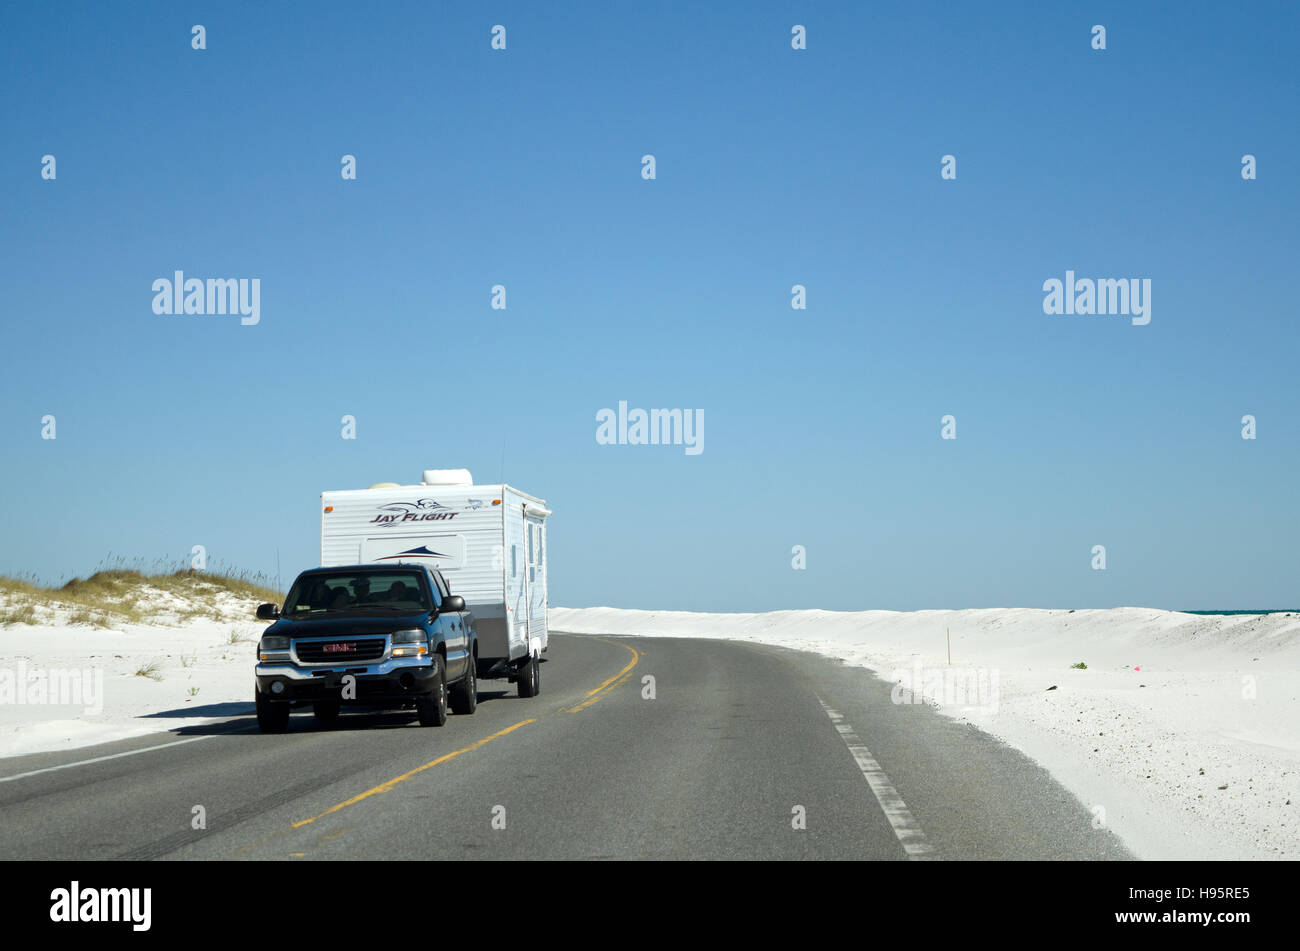 La spiaggia di Pensacola Florida USA - Veicolo di un sistema di traino caravan lungo la Gulf Coast highway Foto Stock